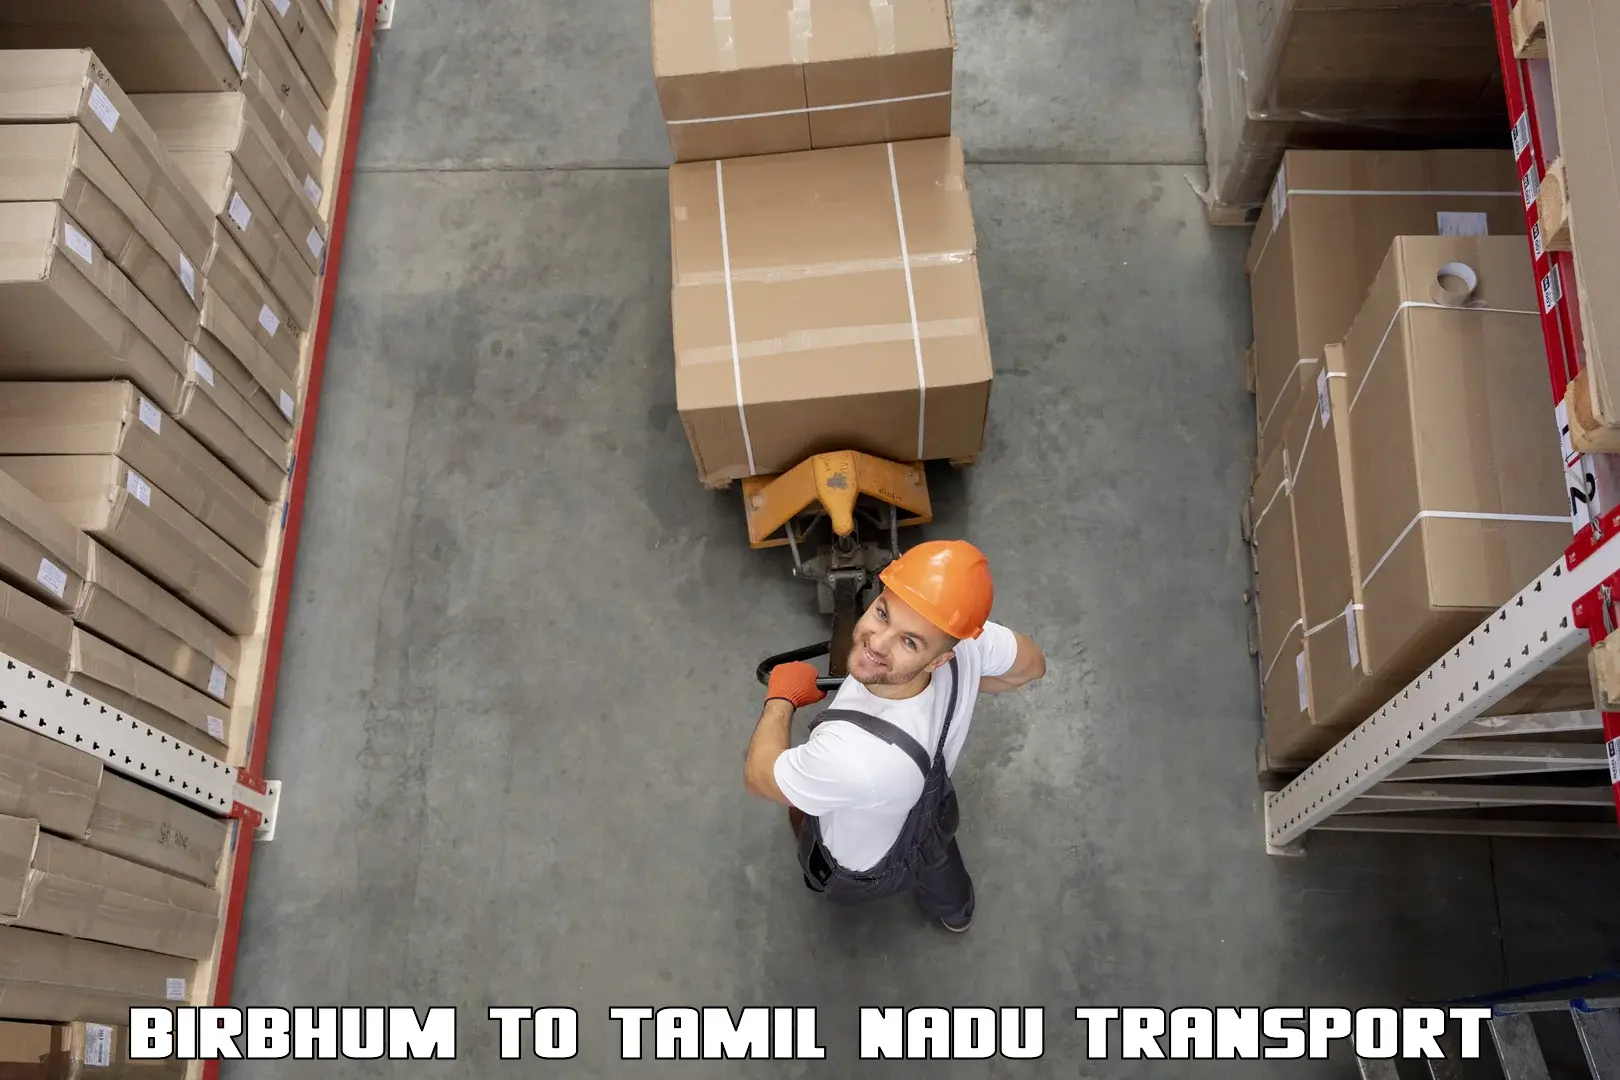 Truck transport companies in India Birbhum to Nilakottai